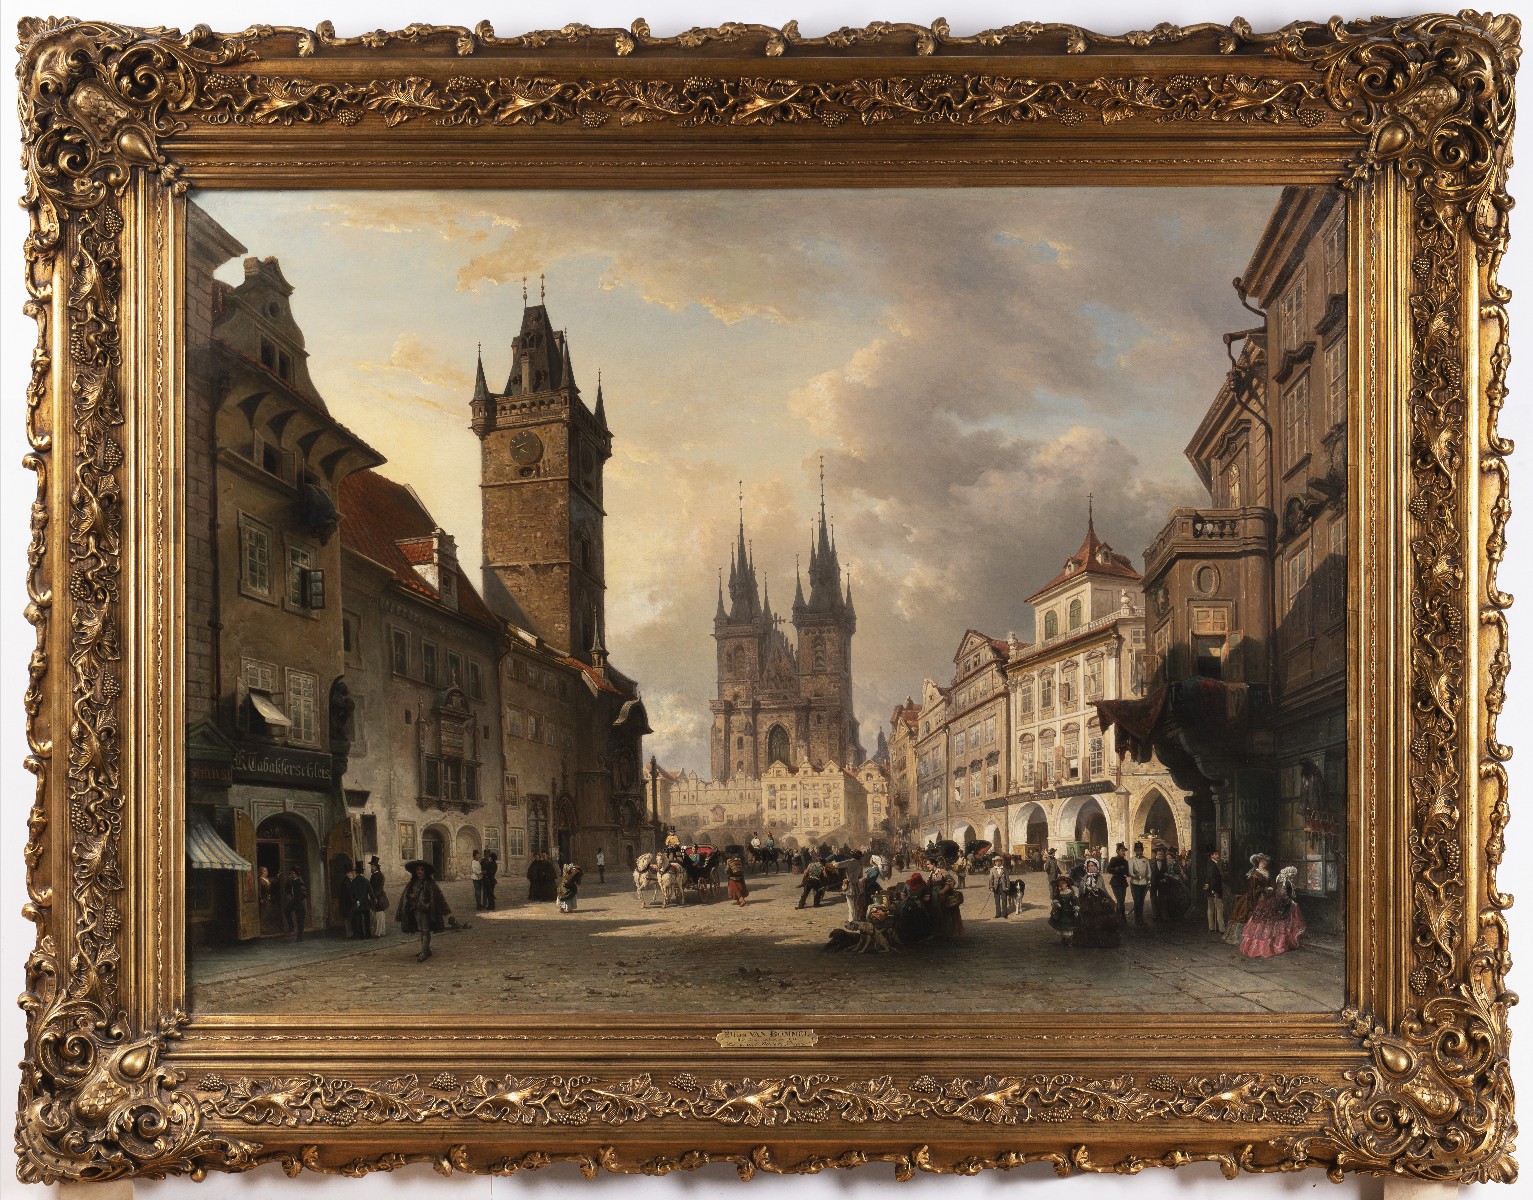 Obraz s pohledem na Staroměstské náměstí včetně původního rámu